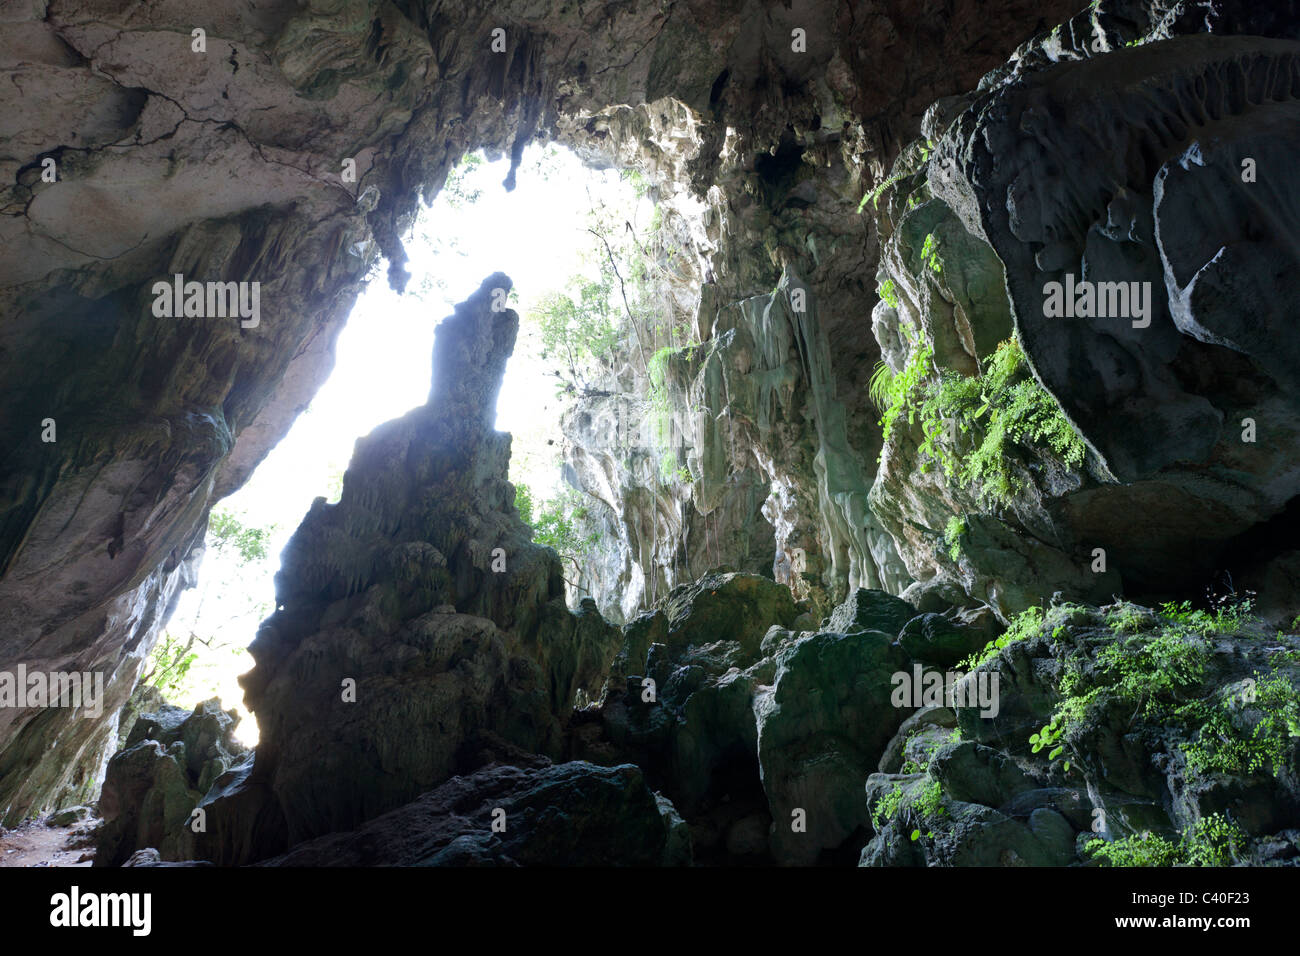 Grotte de calcaire de San Gabriel, du parc national Los Haitises, République Dominicaine Banque D'Images